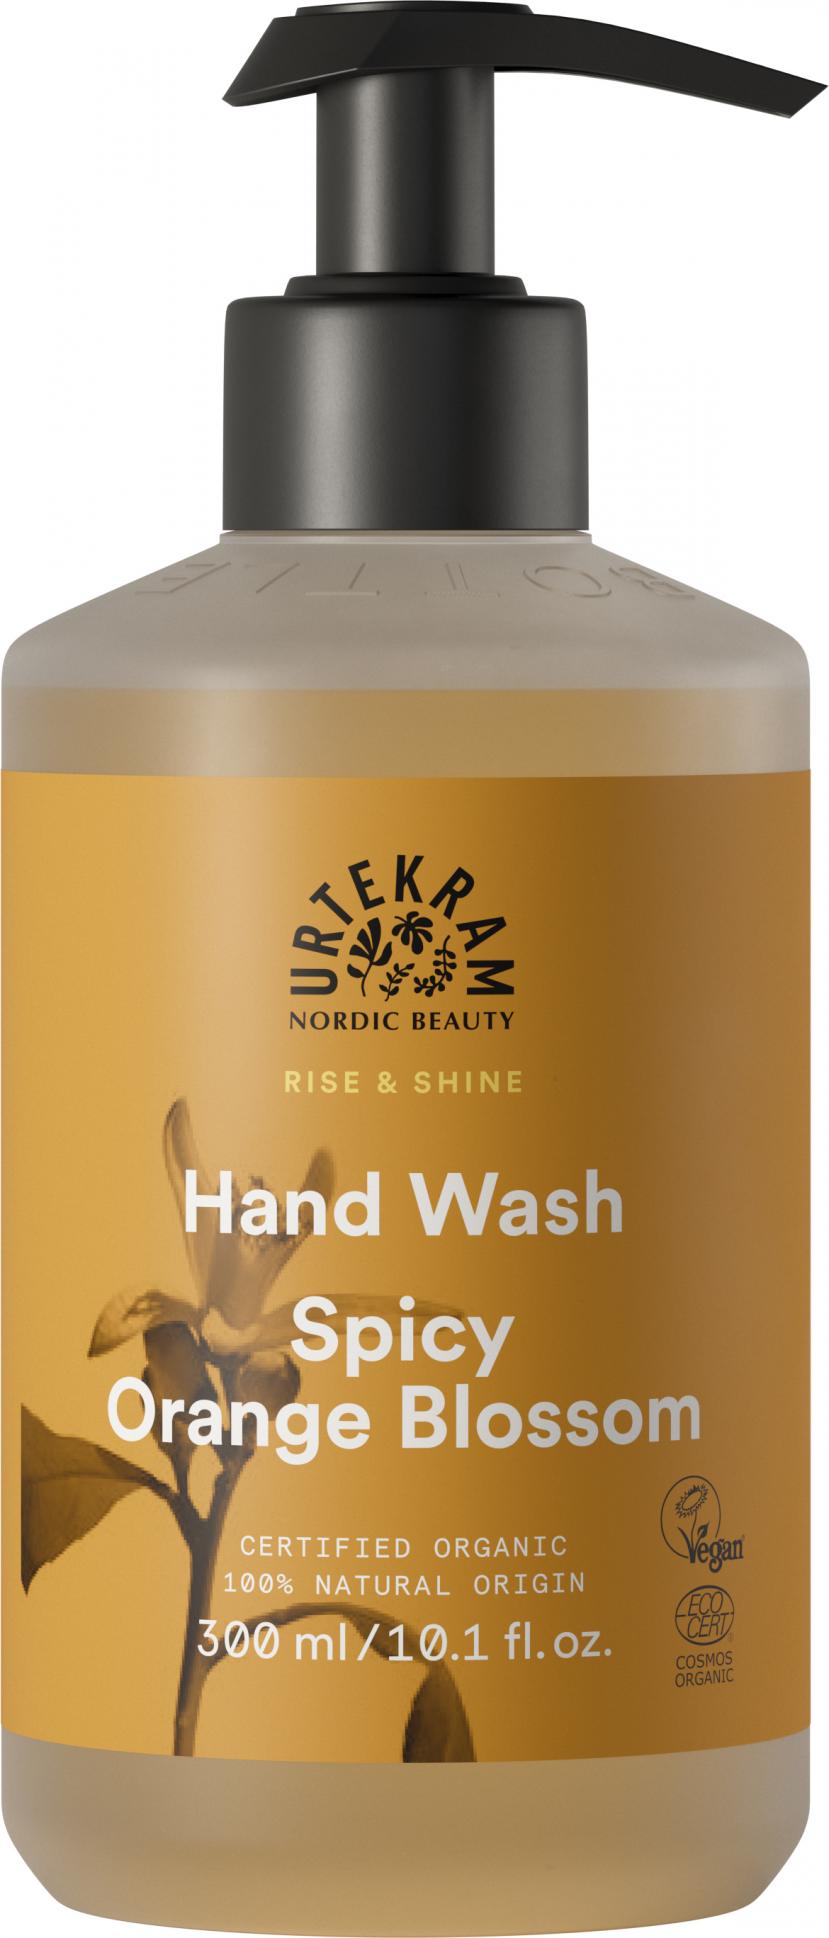 Urtekram Hand Wash Spicy Orange Blossom 300ml